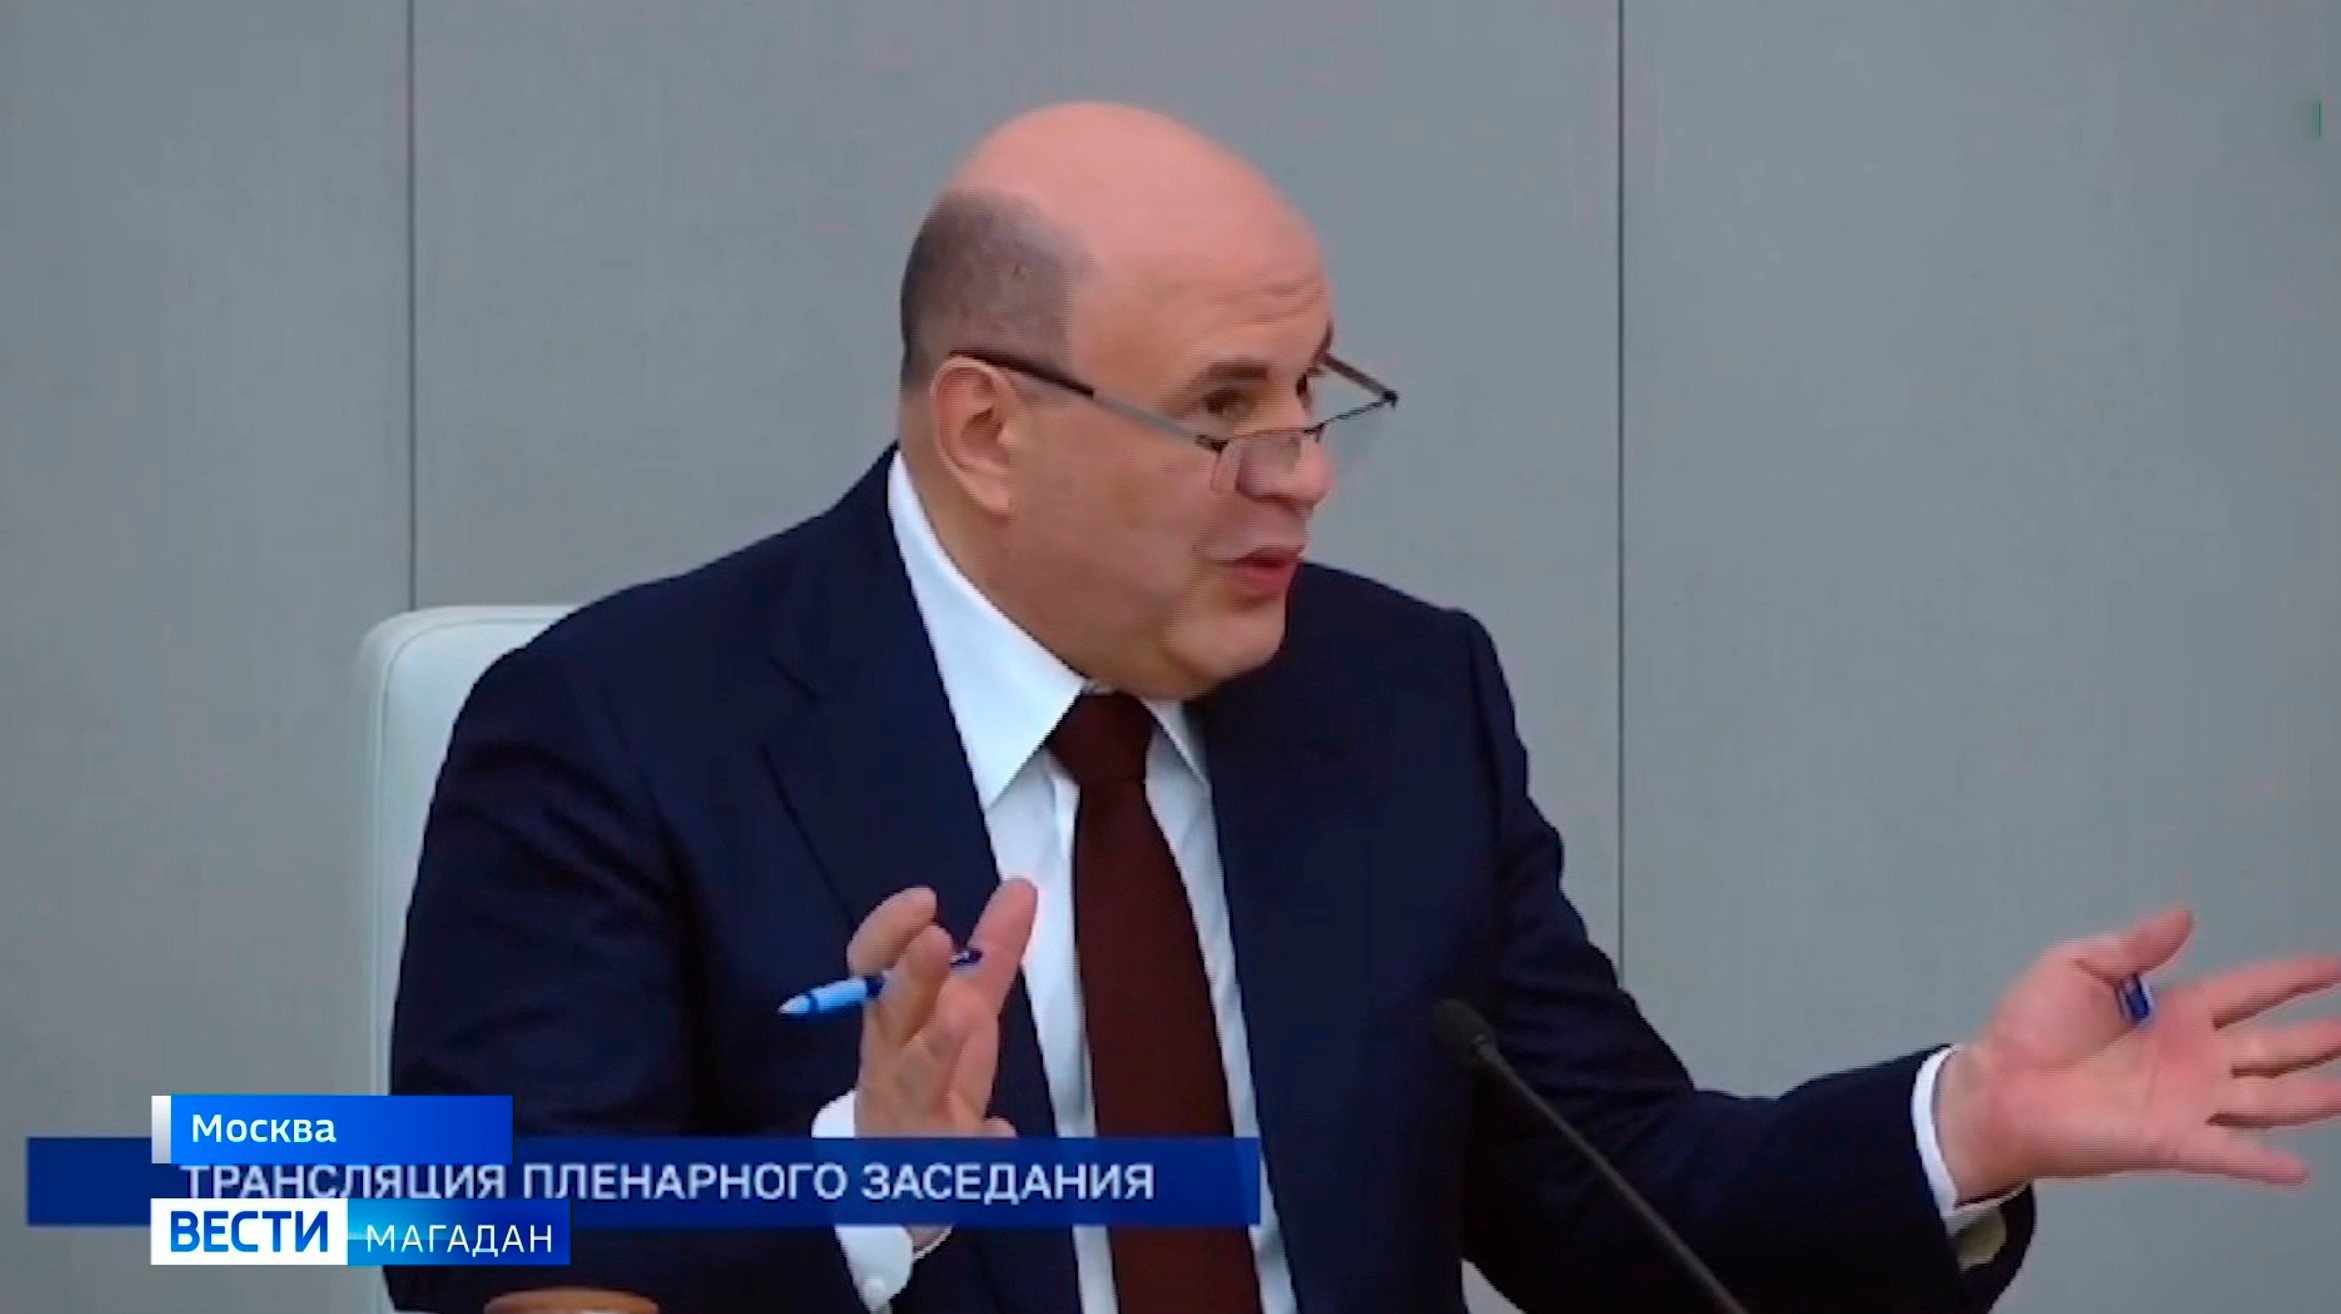 Премьер-министр России рассказал спикеру Госдумы про Магадан